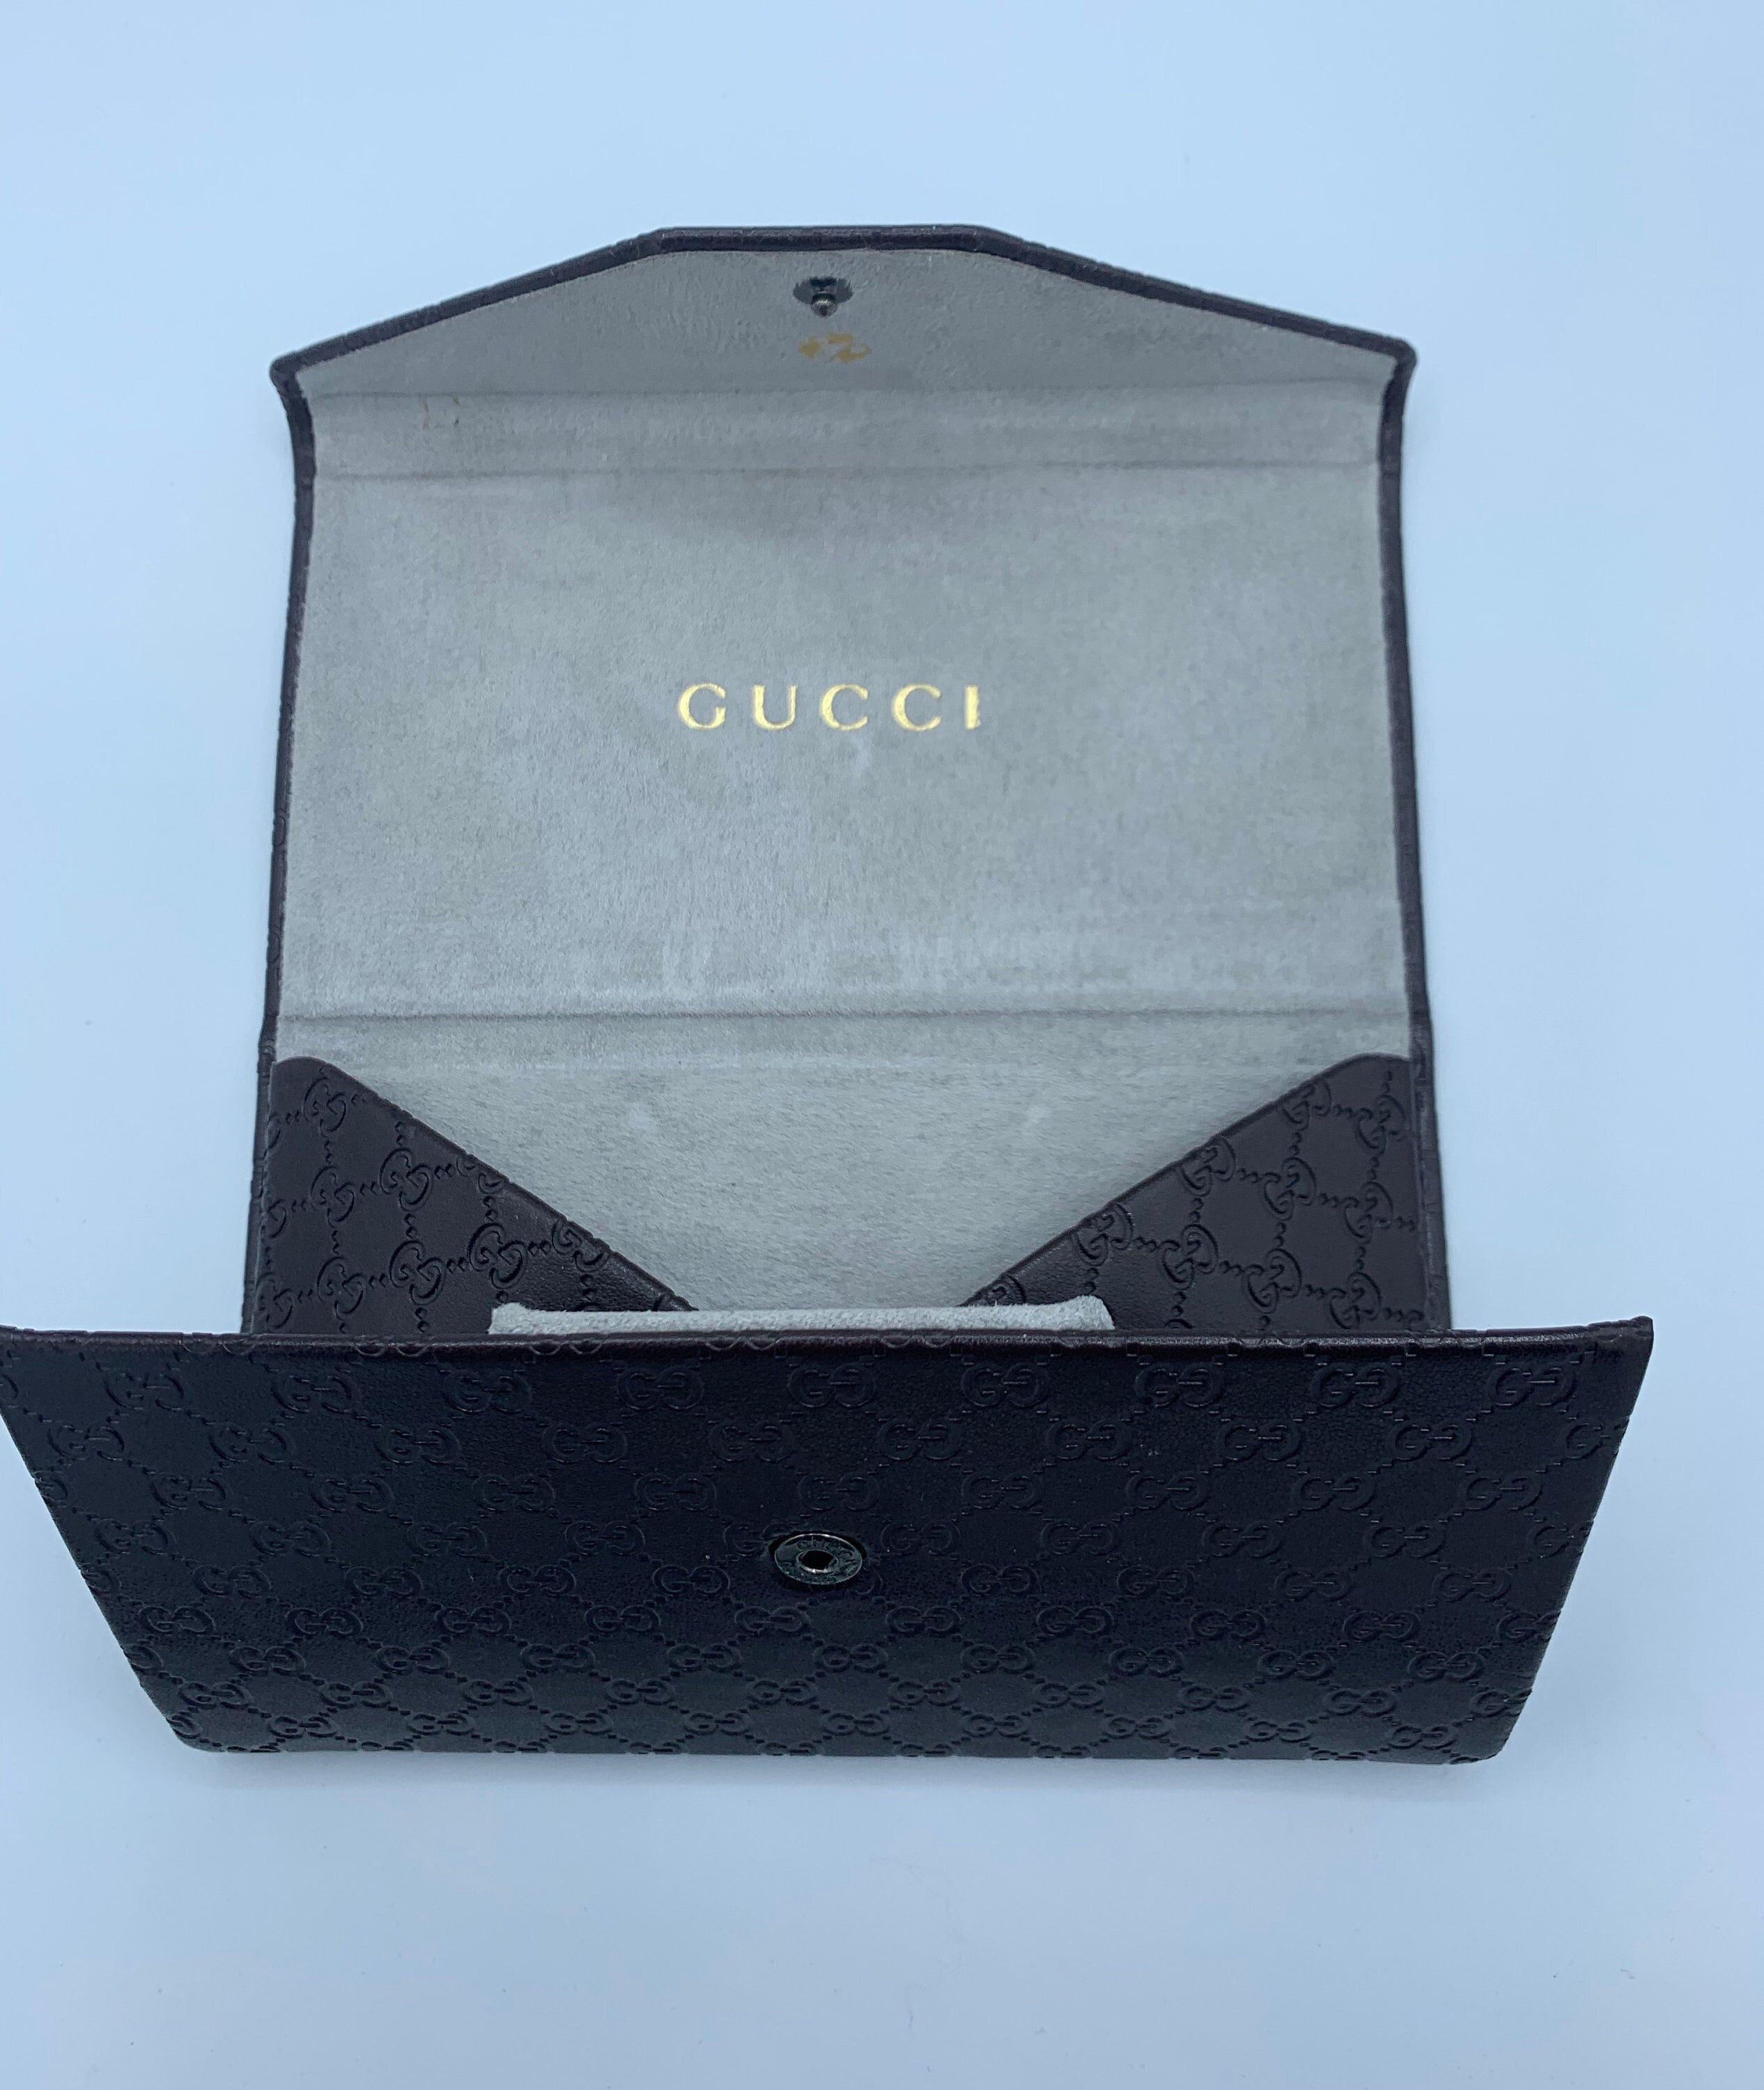 Gucci Sunglasses Glasses Case monogram tri-fold brown leather